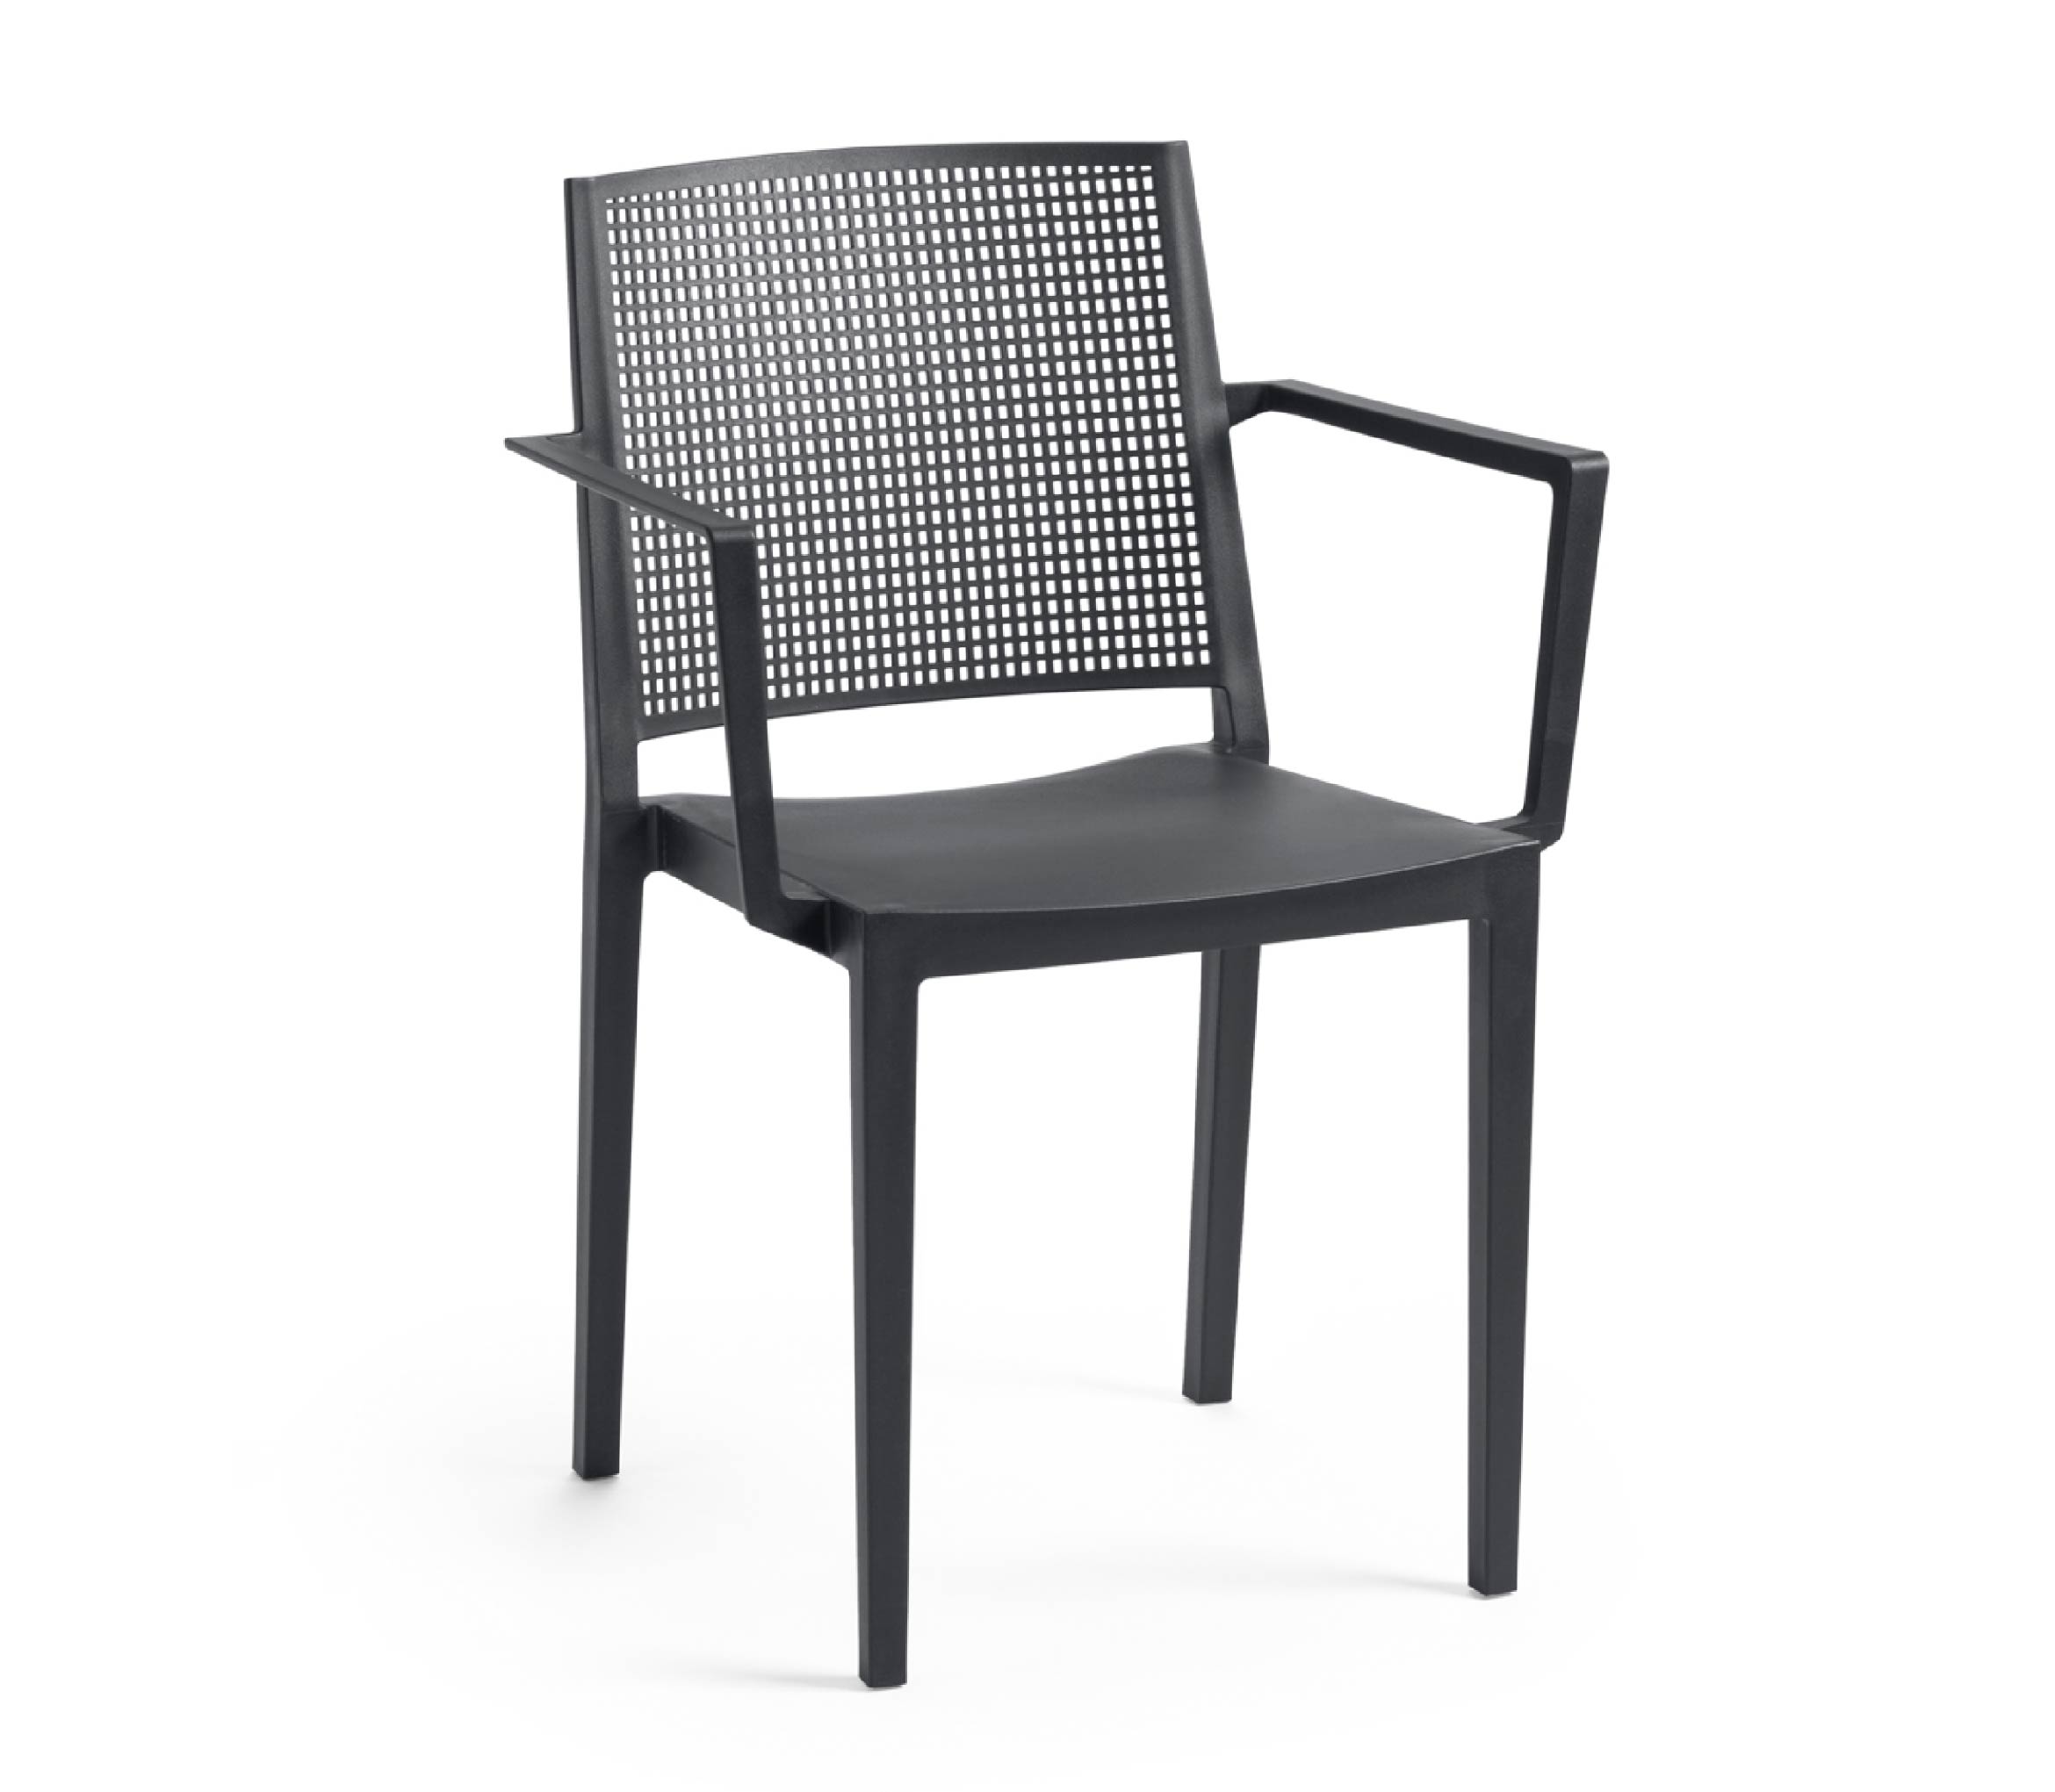 TENSAI_FURNITURE_GRID_ARMCHAIR_ANTHRACITE_950 plastic chair